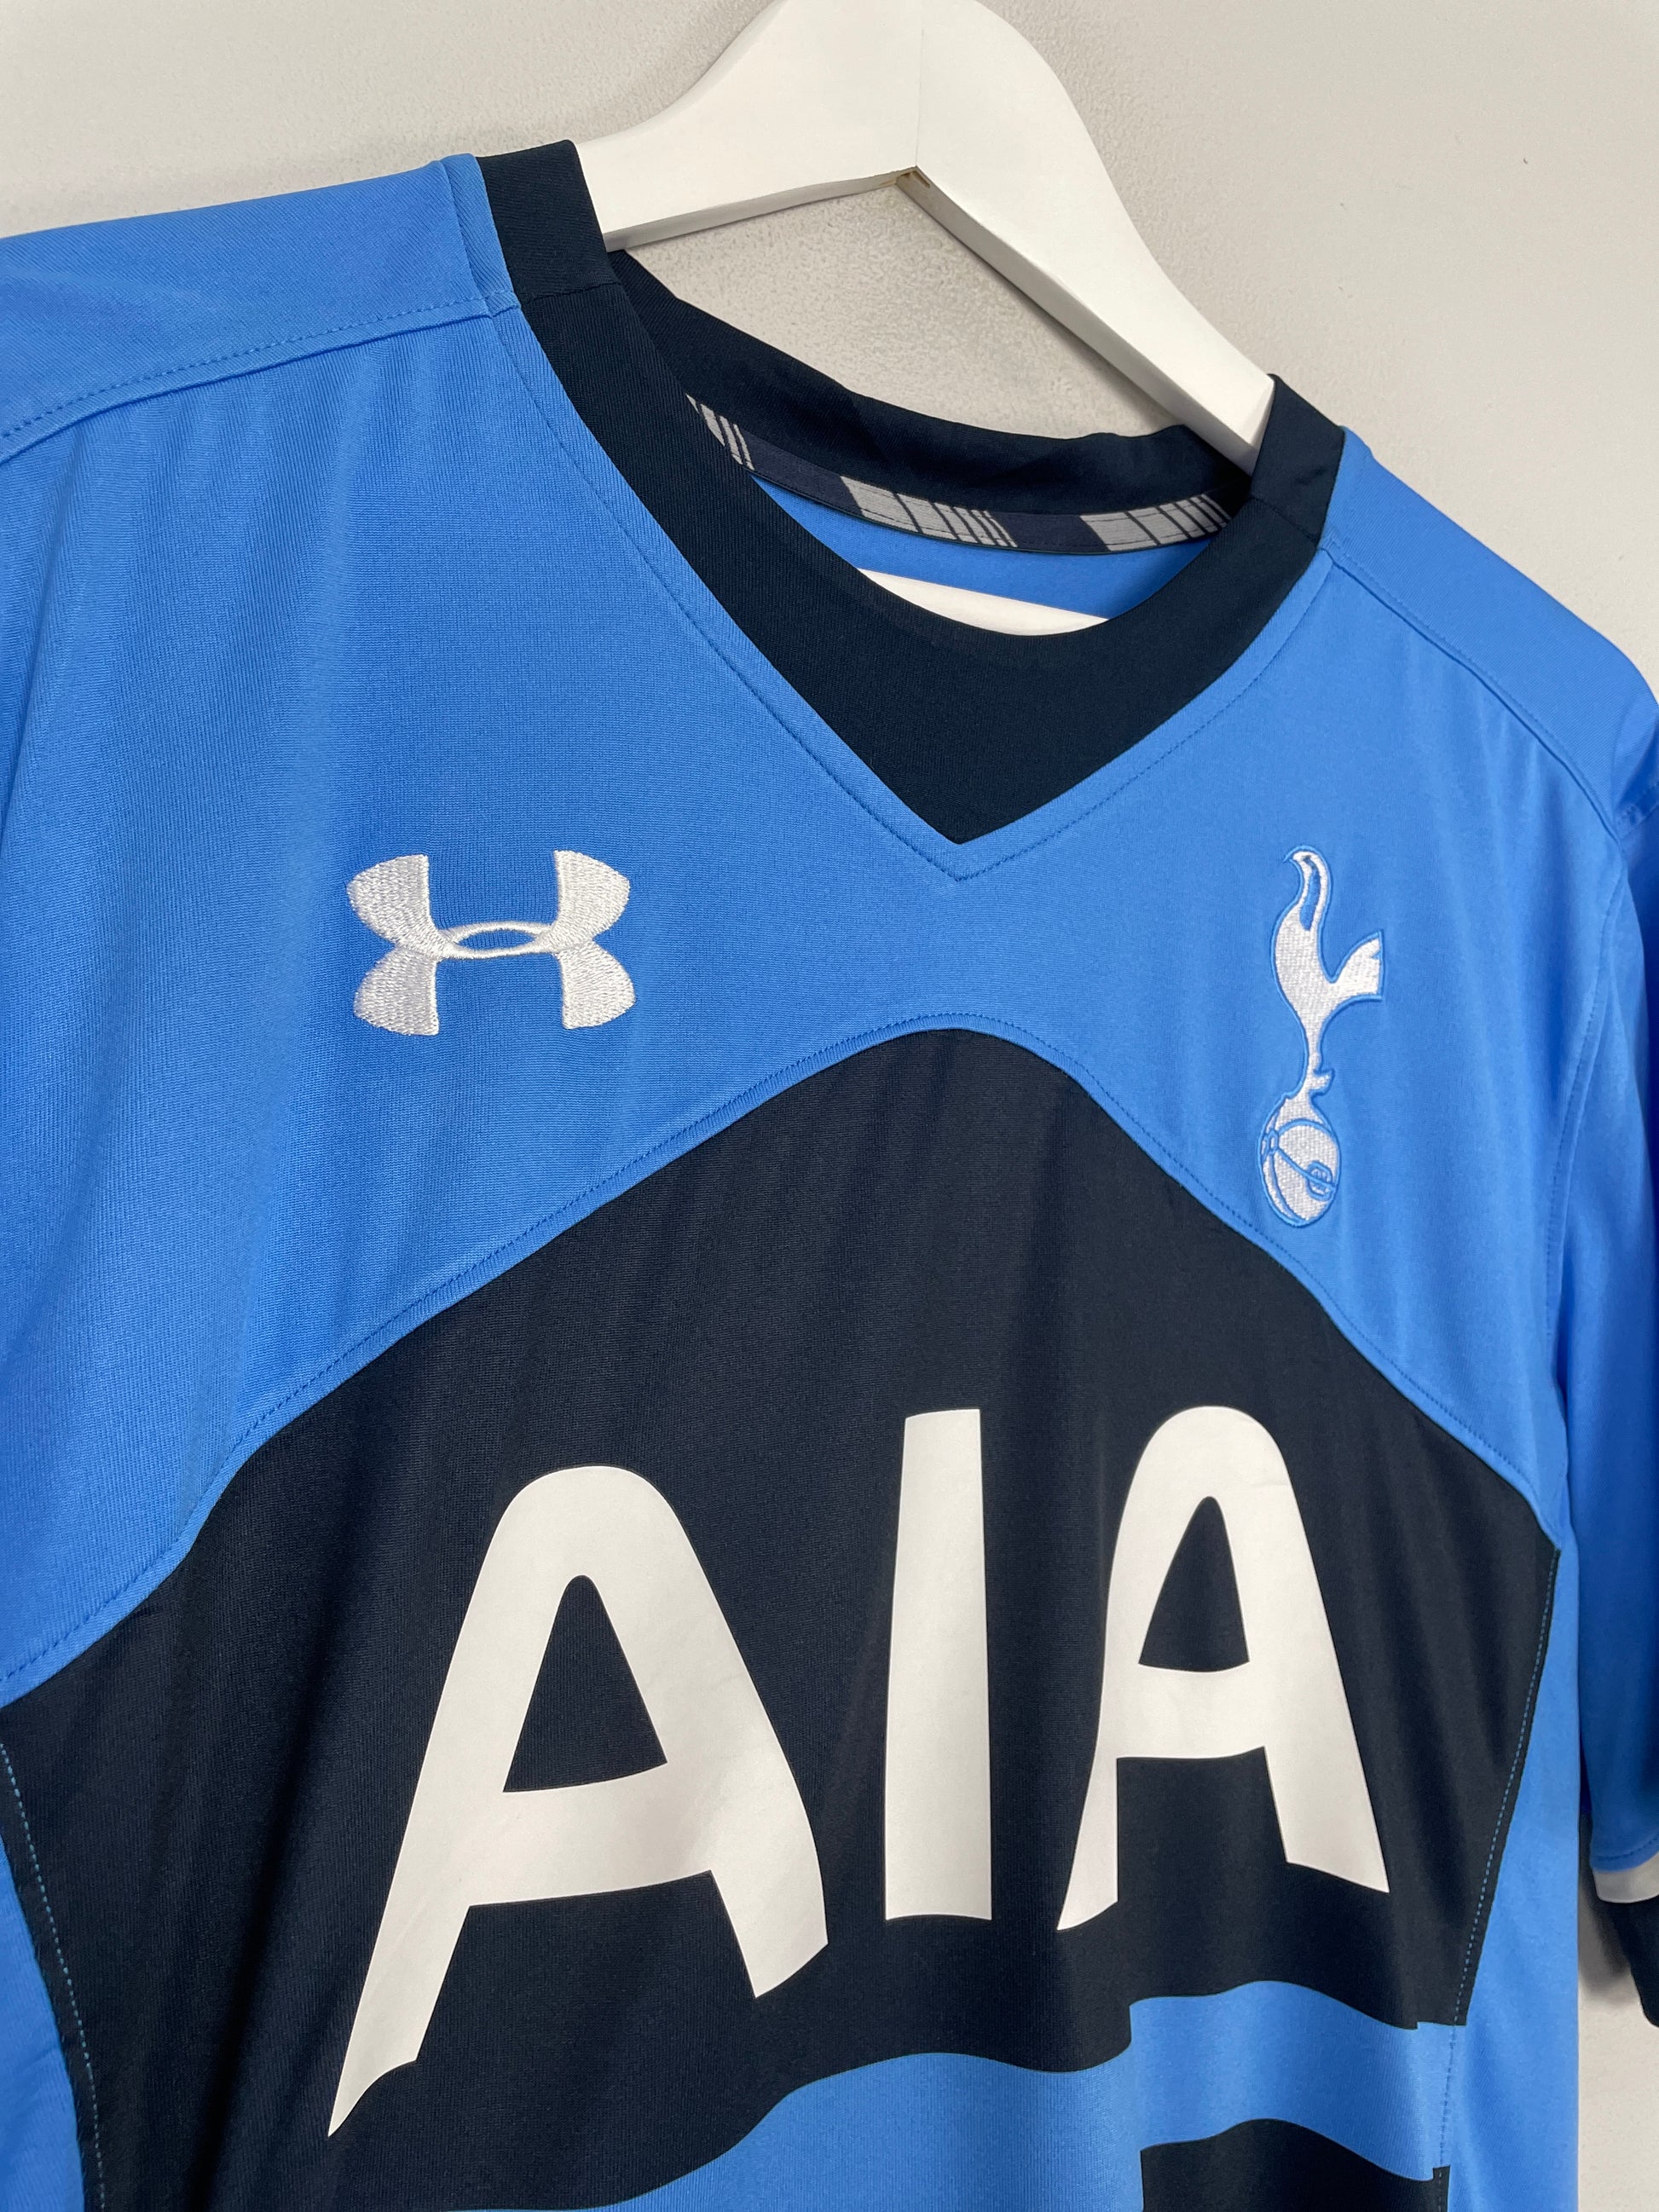 Tottenham Hotspur FC Away Jersey Under Armour Blue Shirt Size Boys L #10  Soccer